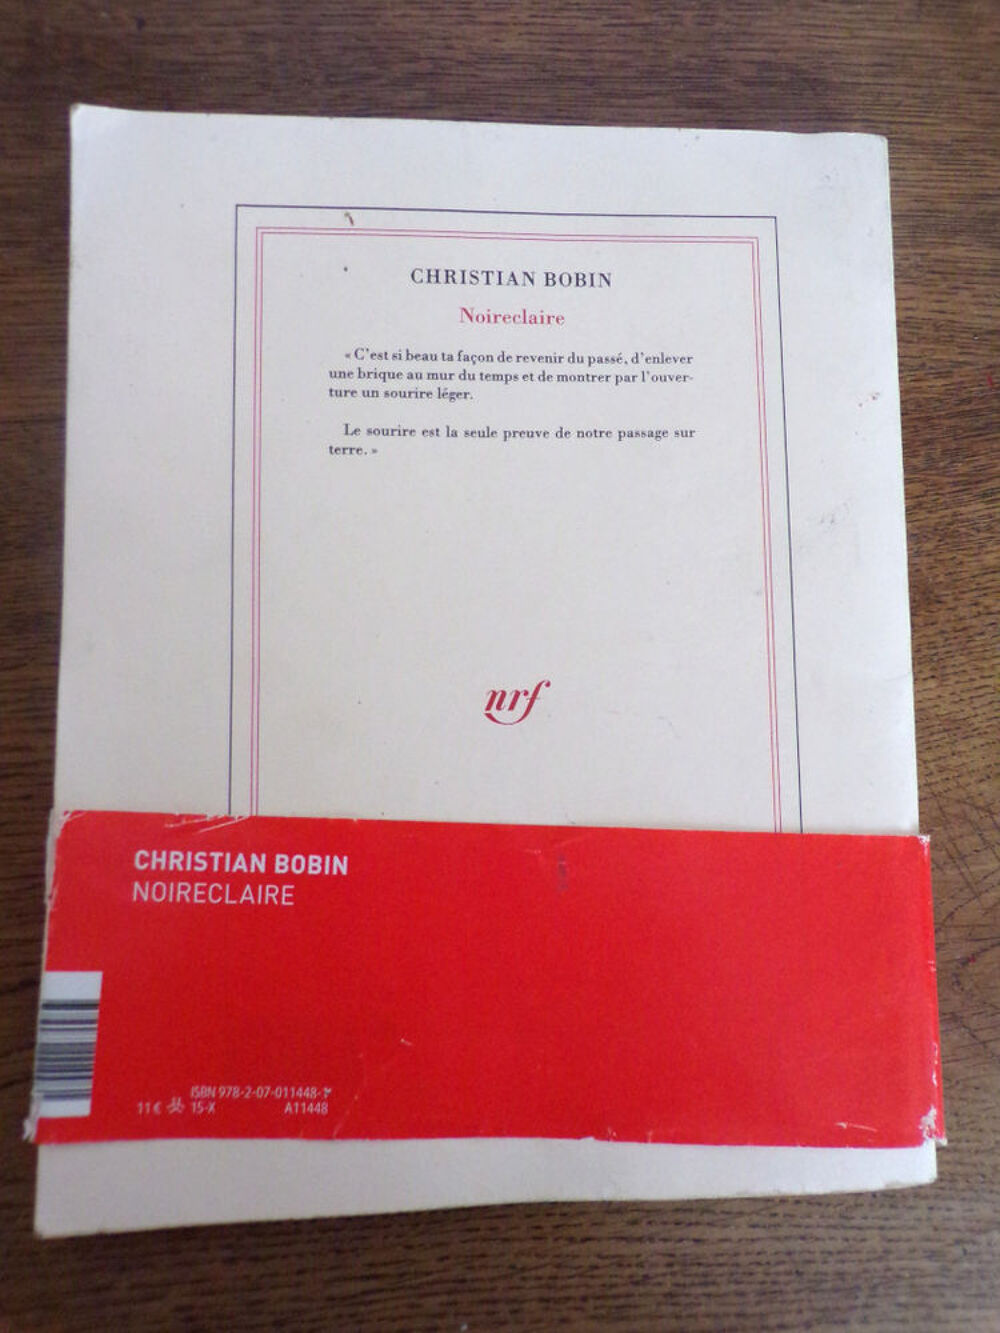 Noireclaire Christian Bobin &eacute;dition Gallimard nrf 2015 74 p Livres et BD